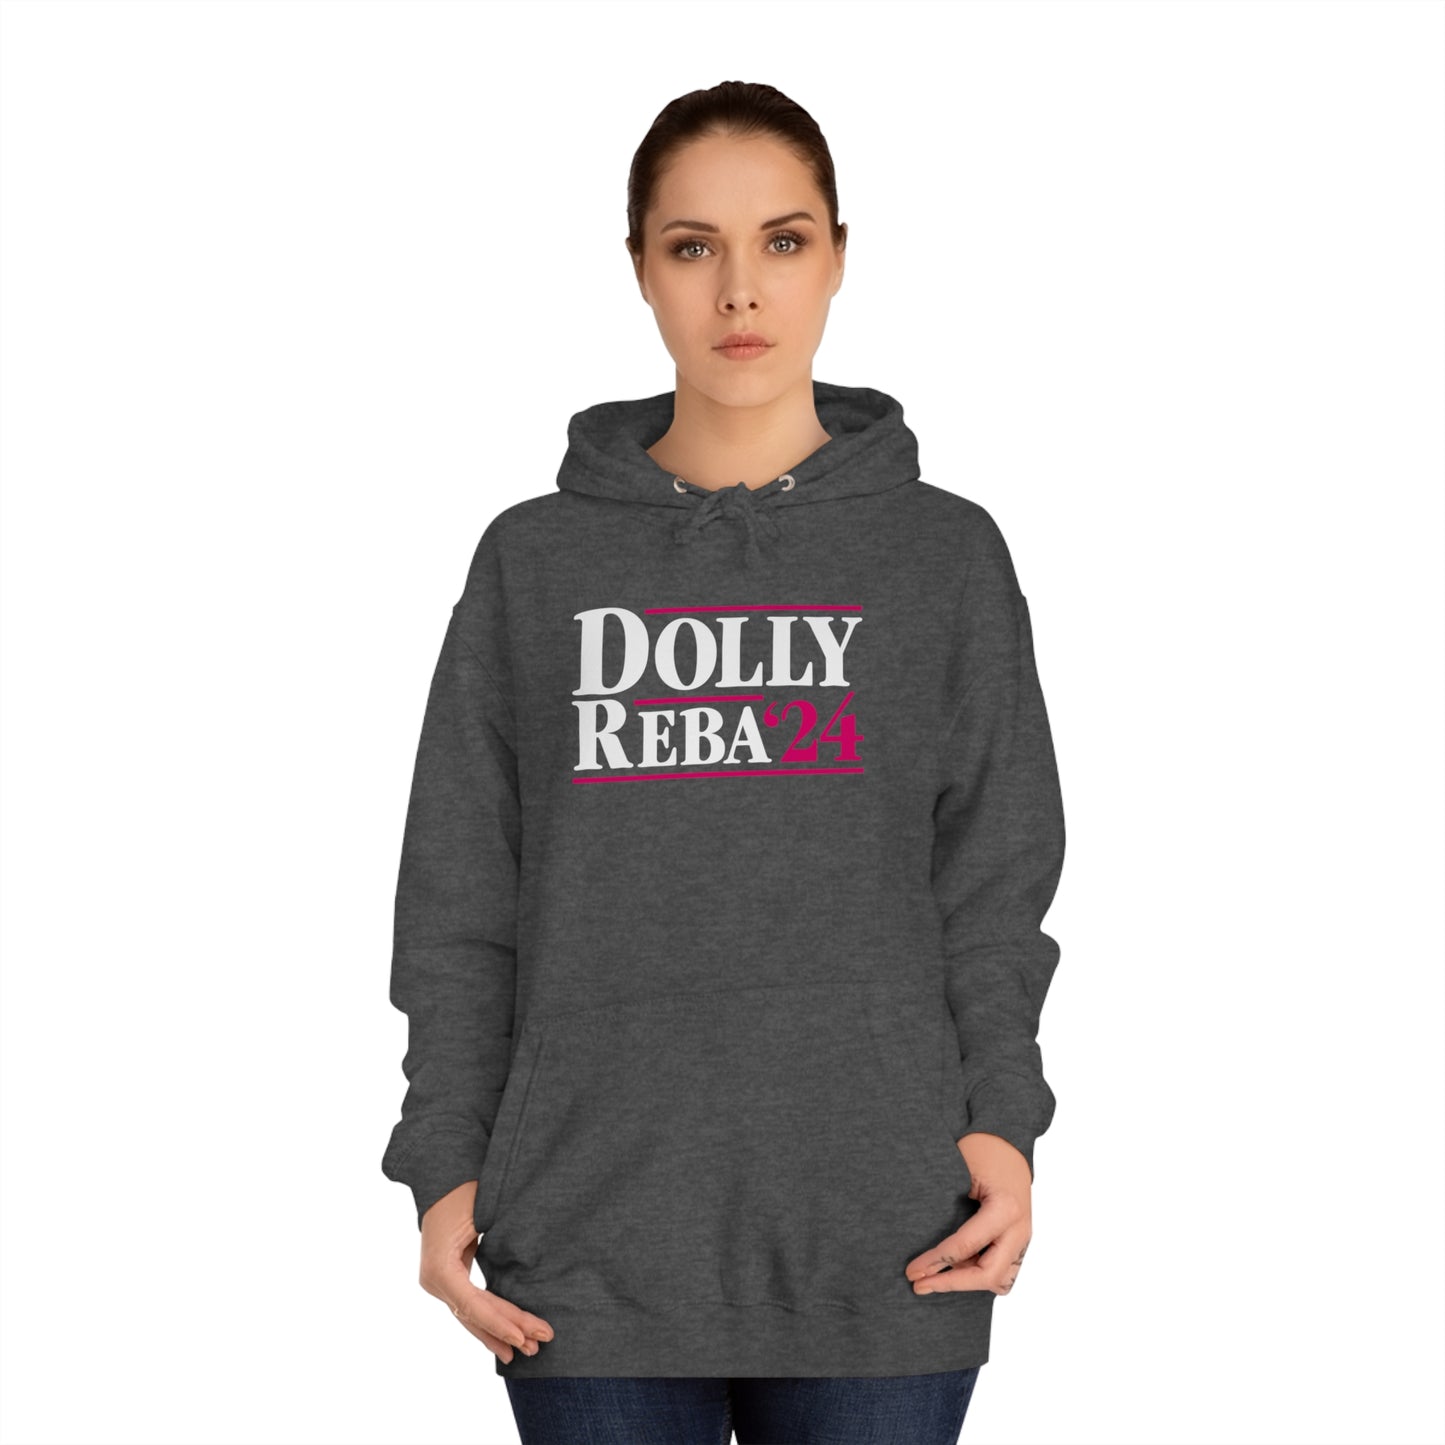 Dolly / Reba 2024 Hoodie